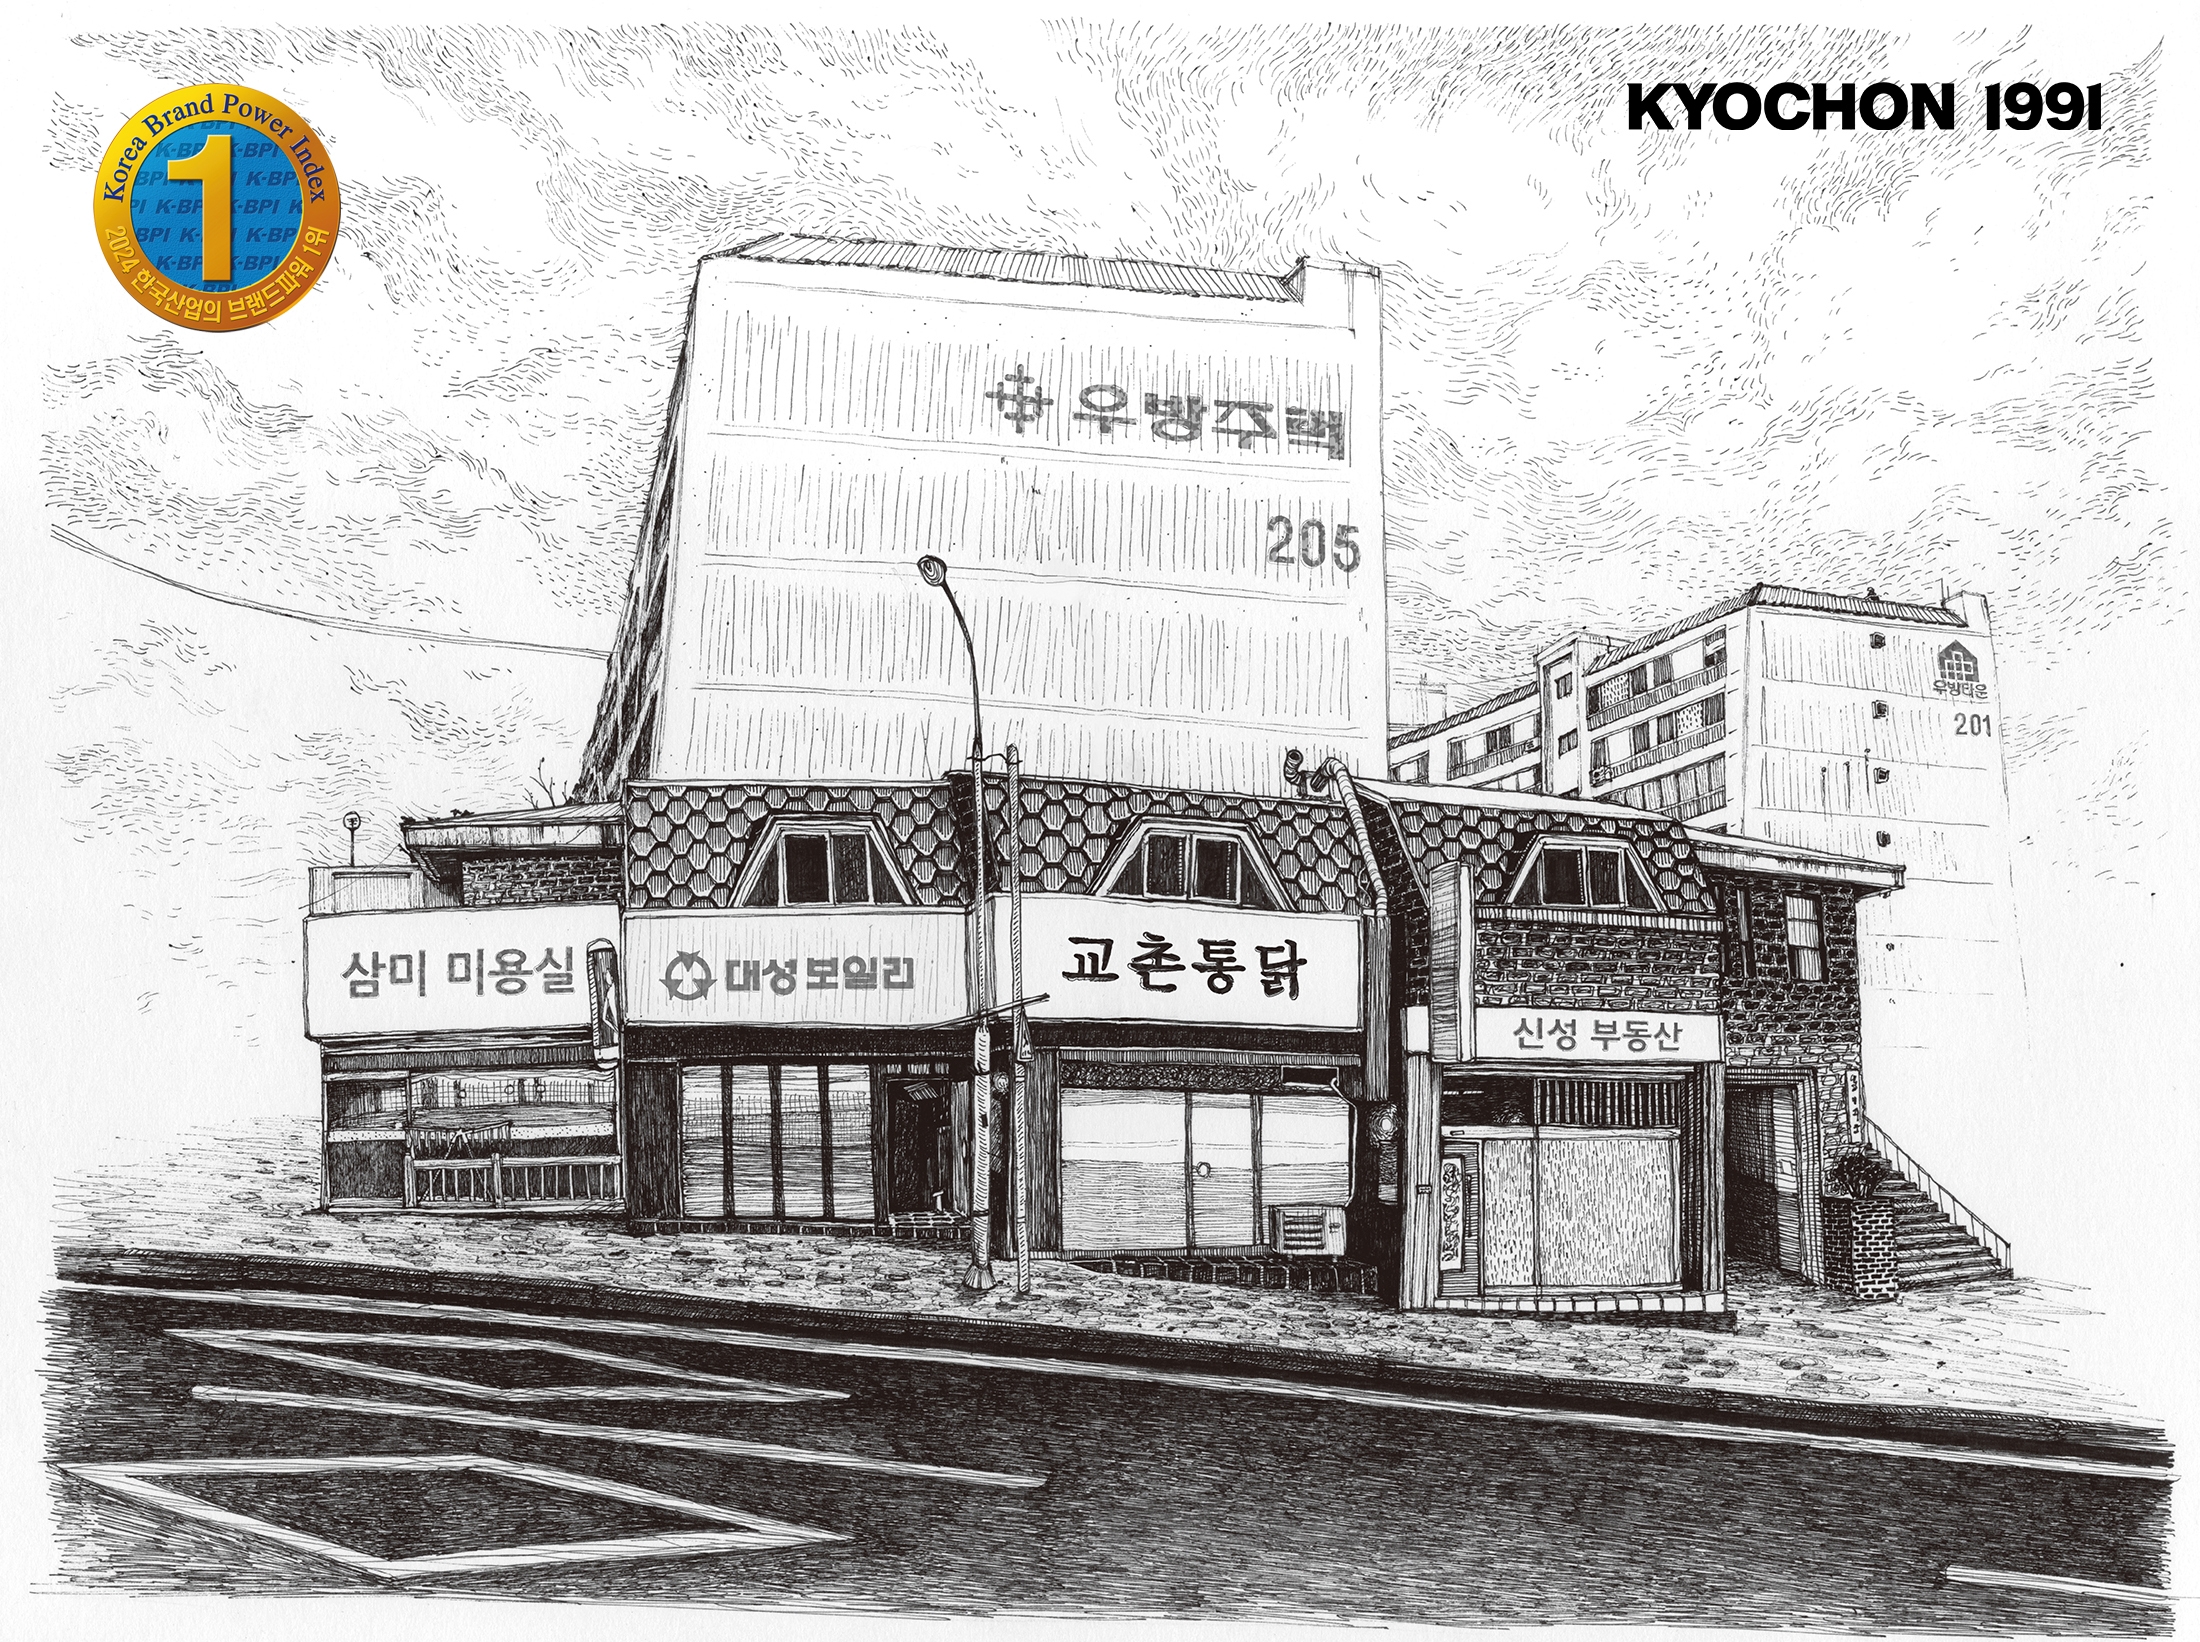 교촌치킨, 한국산업의 브랜드파워(K-BPI) 9년 연속 1위 수상 차지